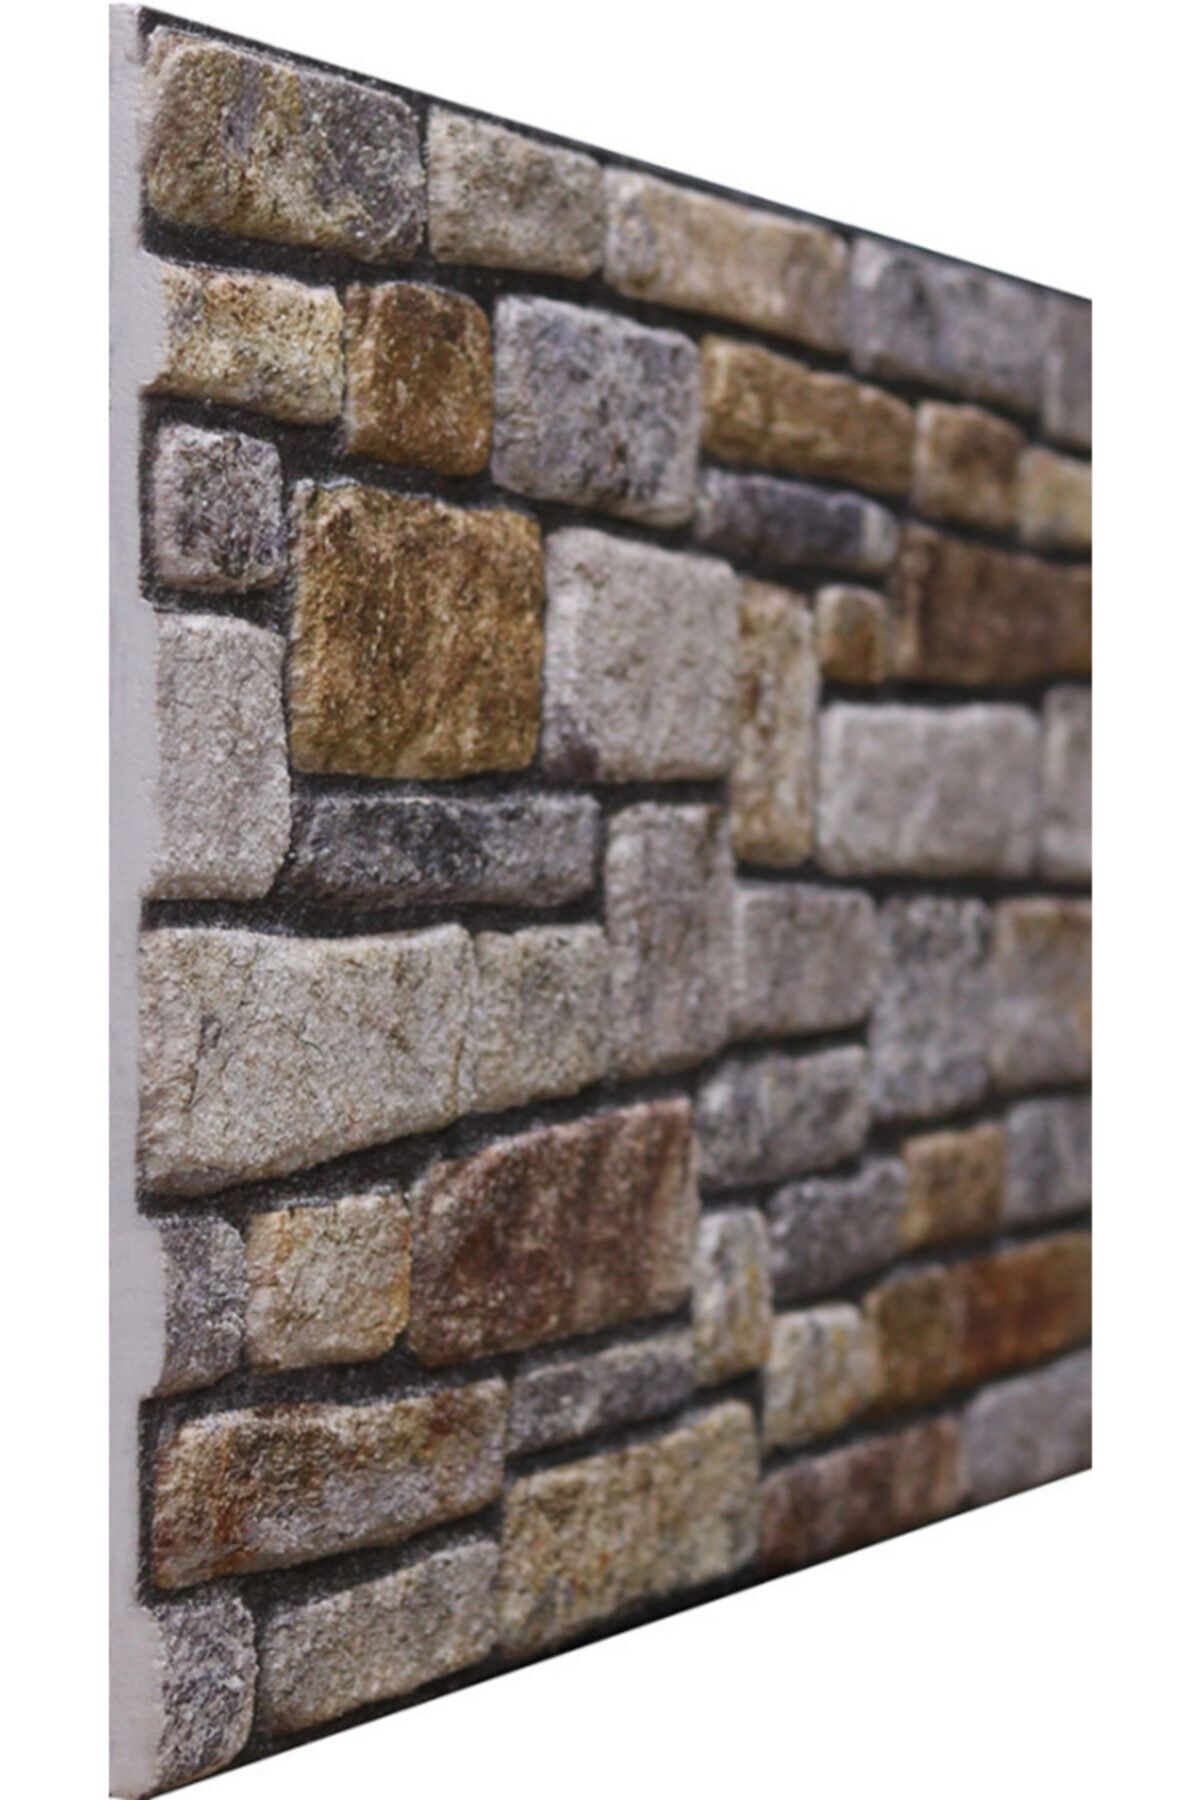 Stikwall Yığma Taş Dokulu Dekoratif Strafor Duvar Kaplama Paneli 660-201 - 50x100 Cm (5 ADET-2,5M2)